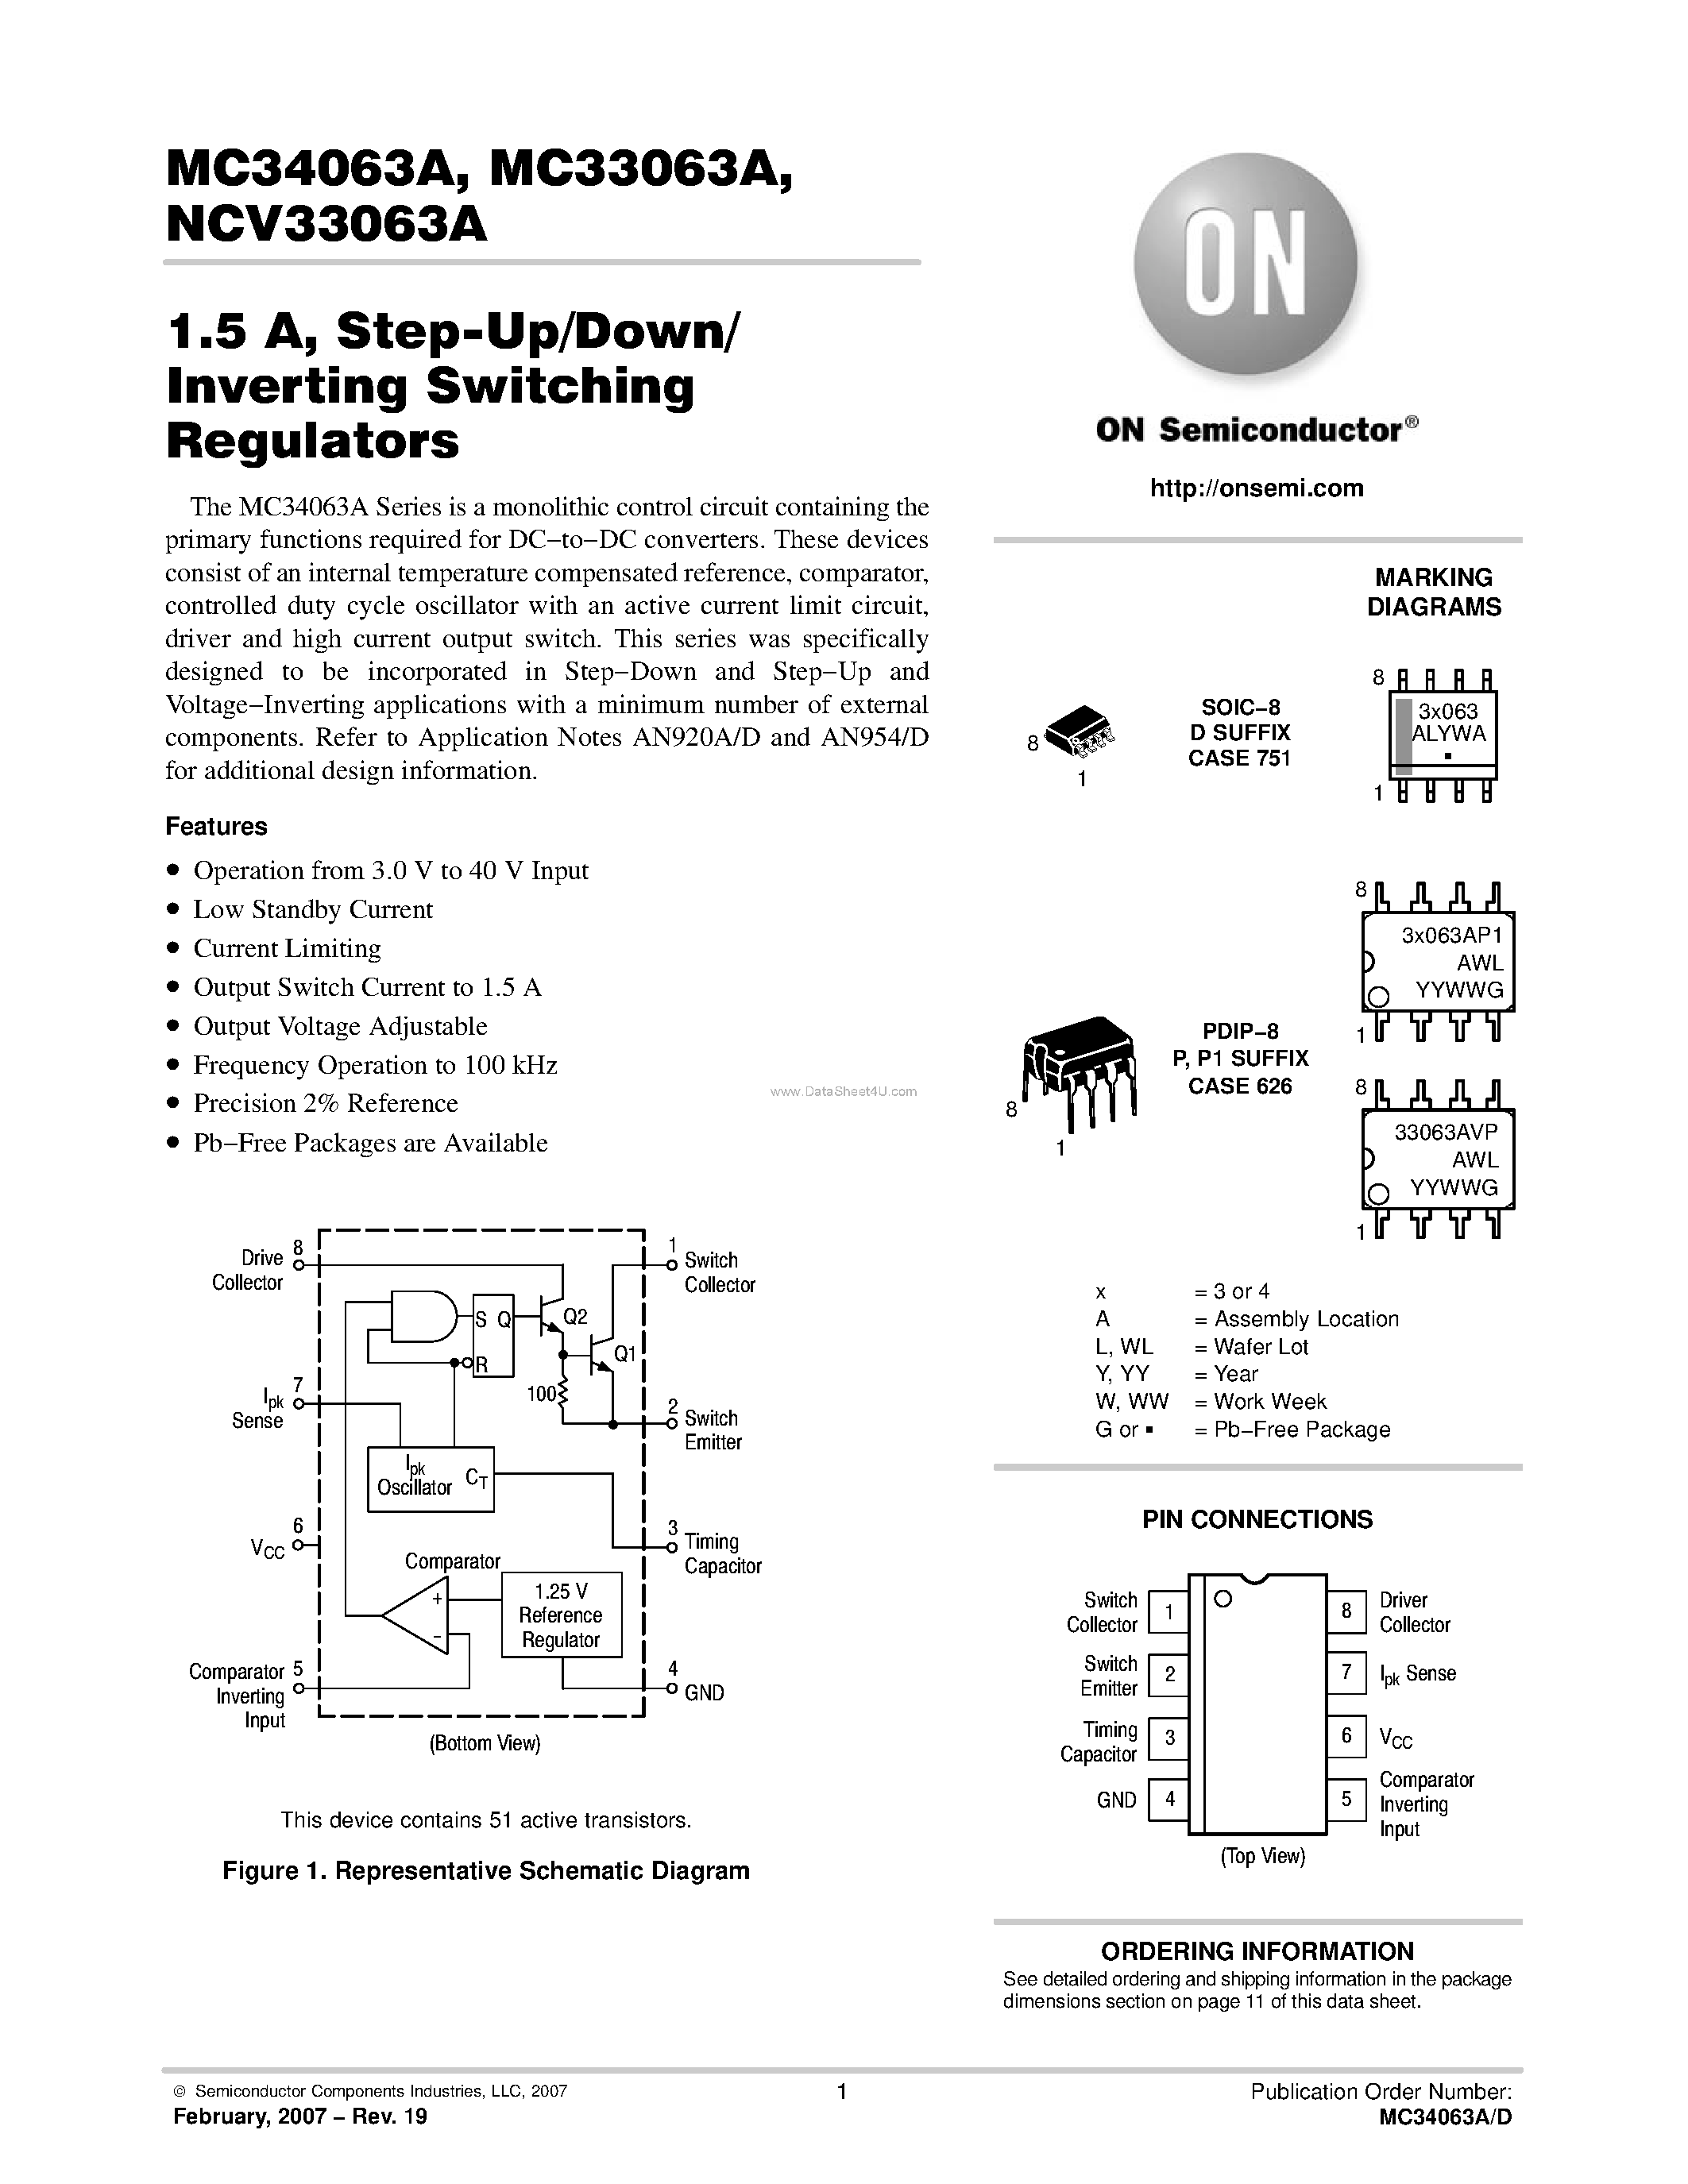 Datasheet MC33063A - (MC33063A / MC34063A) Step-Up/Down/ Inverting Switching Regulators page 1